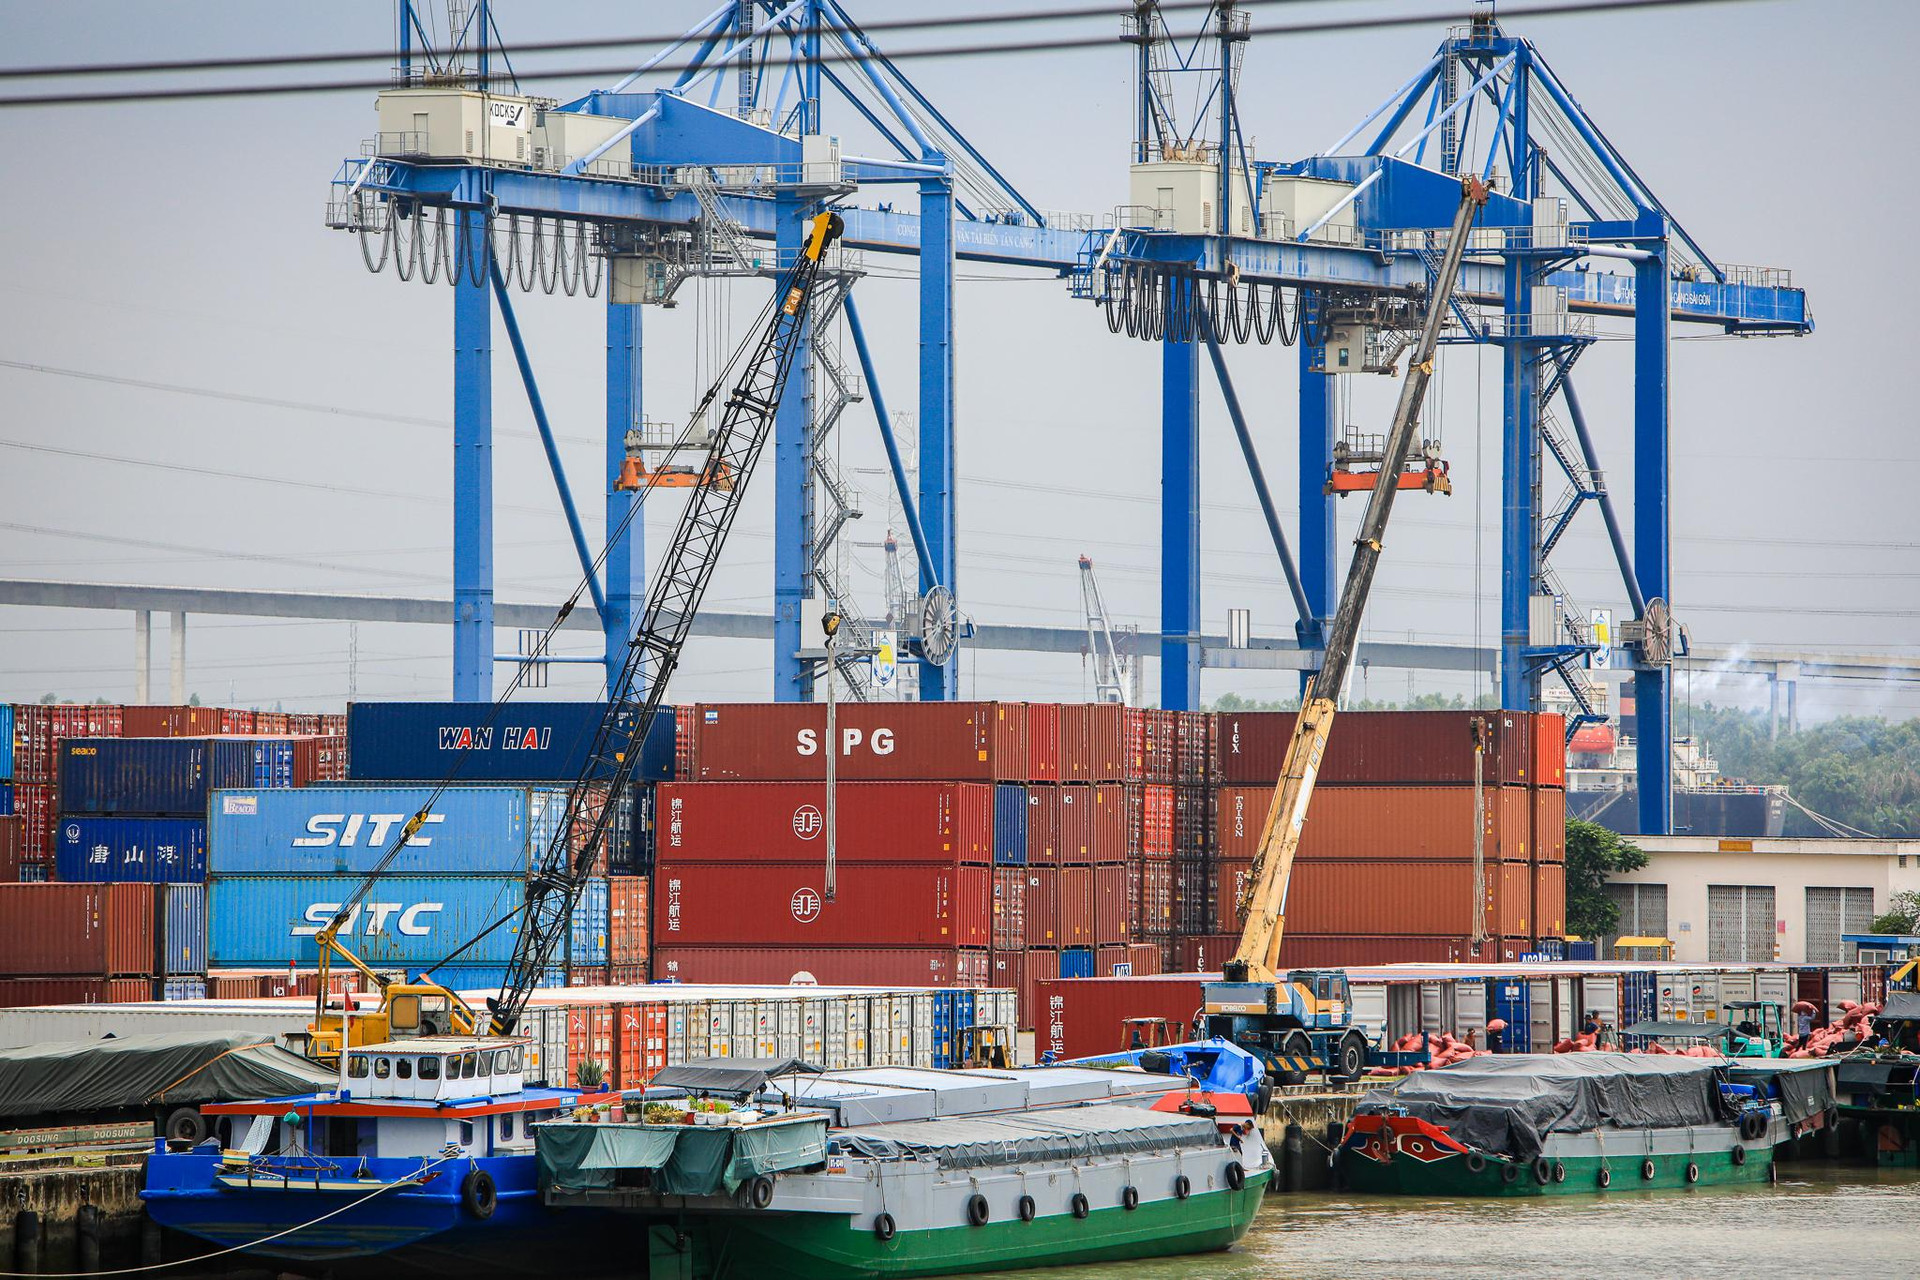 ‏K‏‏hu công nghiệp ‏‏có đến 3 cảng quốc tế, rộng nhất ‏‏TP. HCM - Ảnh 7.